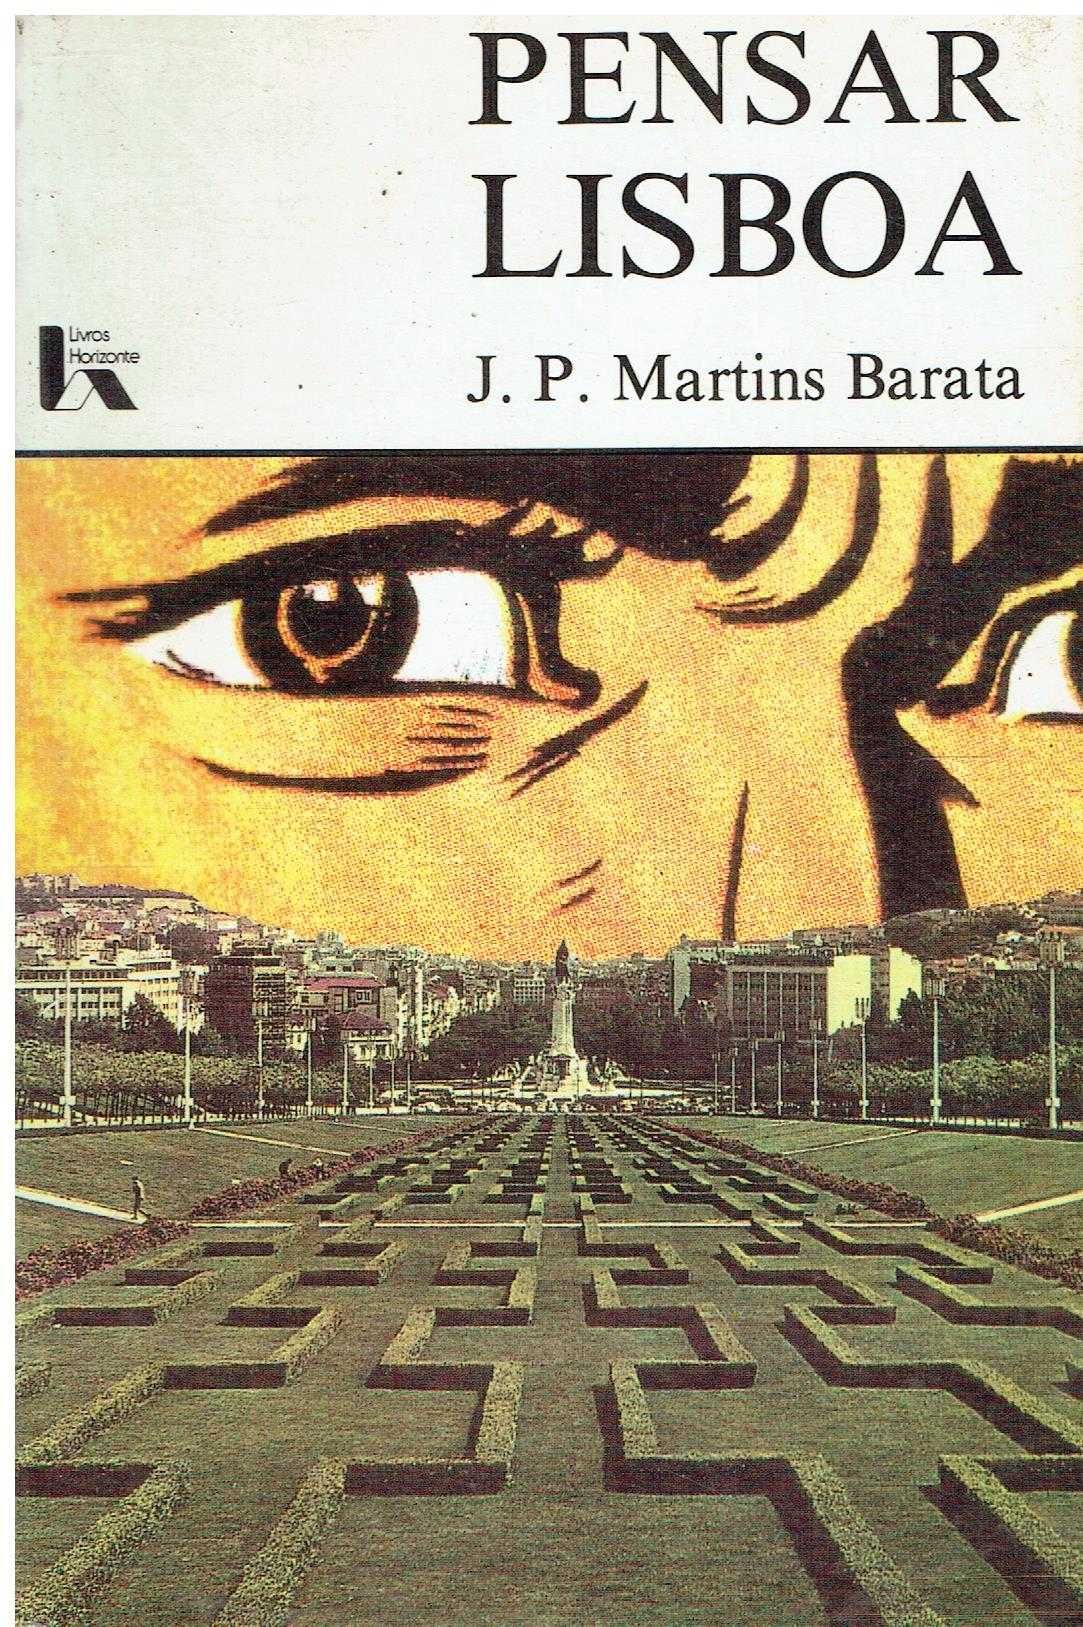 746
	
Pensar Lisboa  
de J. P. Martins Barata.